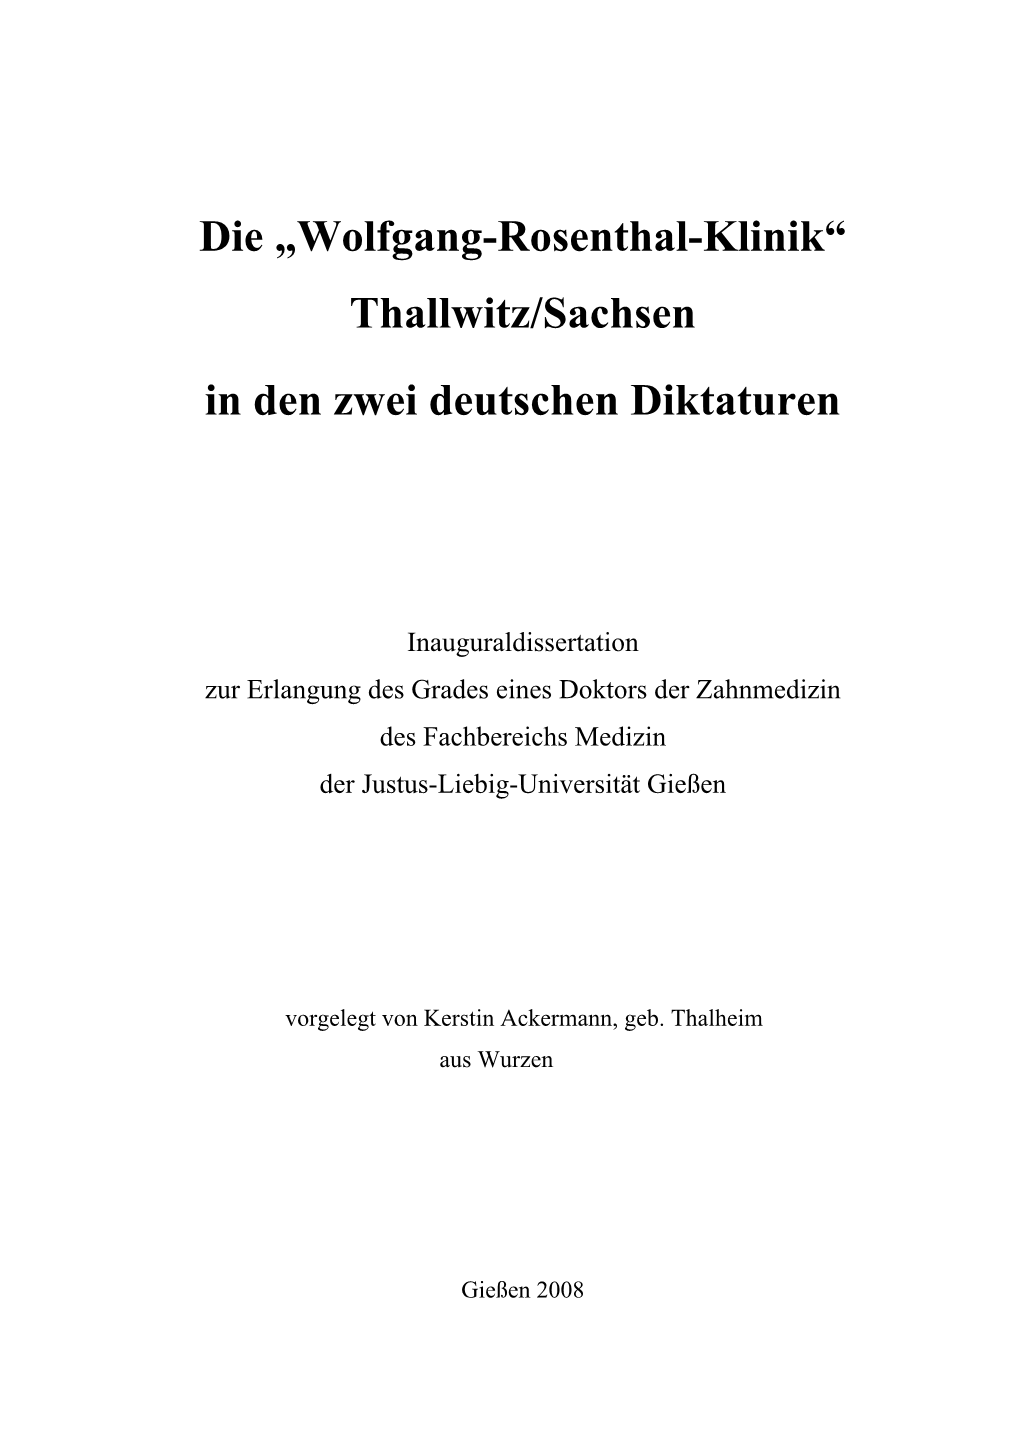 Die „Wolfgang- Rosenthal- Klinik“ Thallwitz/Sachsen in Den Zwei Deutschen Diktaturen Universität Gießen, Dissertation